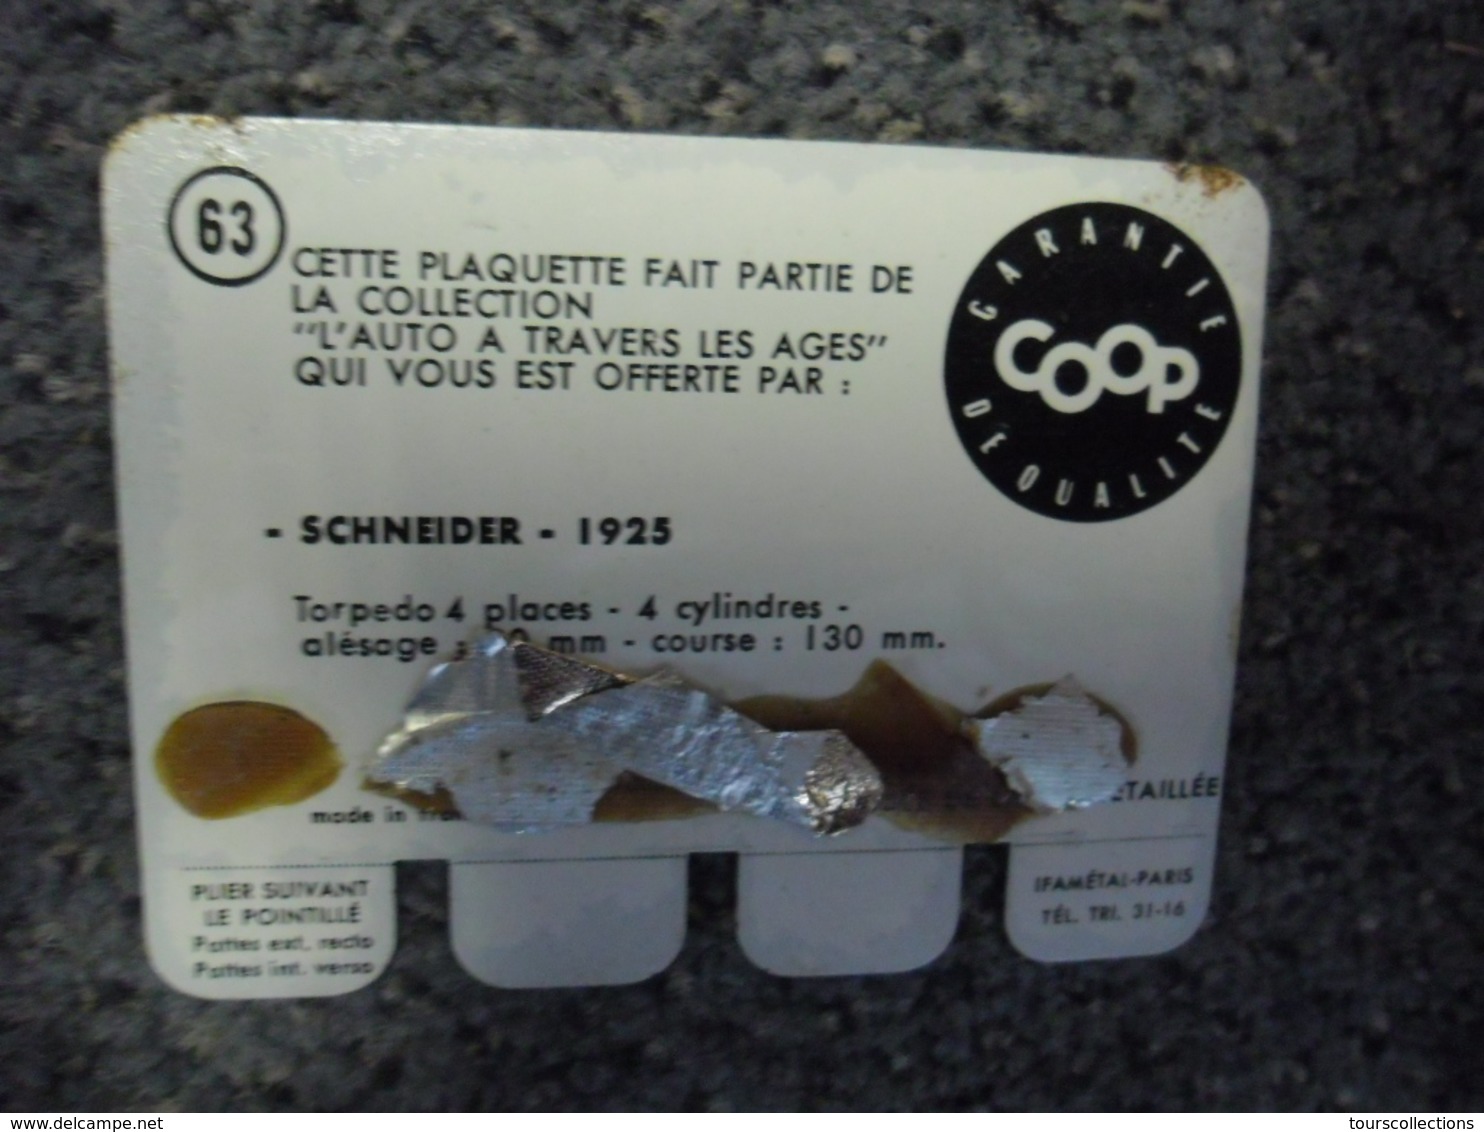 N° 63 - PLAQUE METAL En TOLE SCHNEIDER De 1925 - AUTOMOBILE COOP Des Années 60 - Tin Signs (after1960)